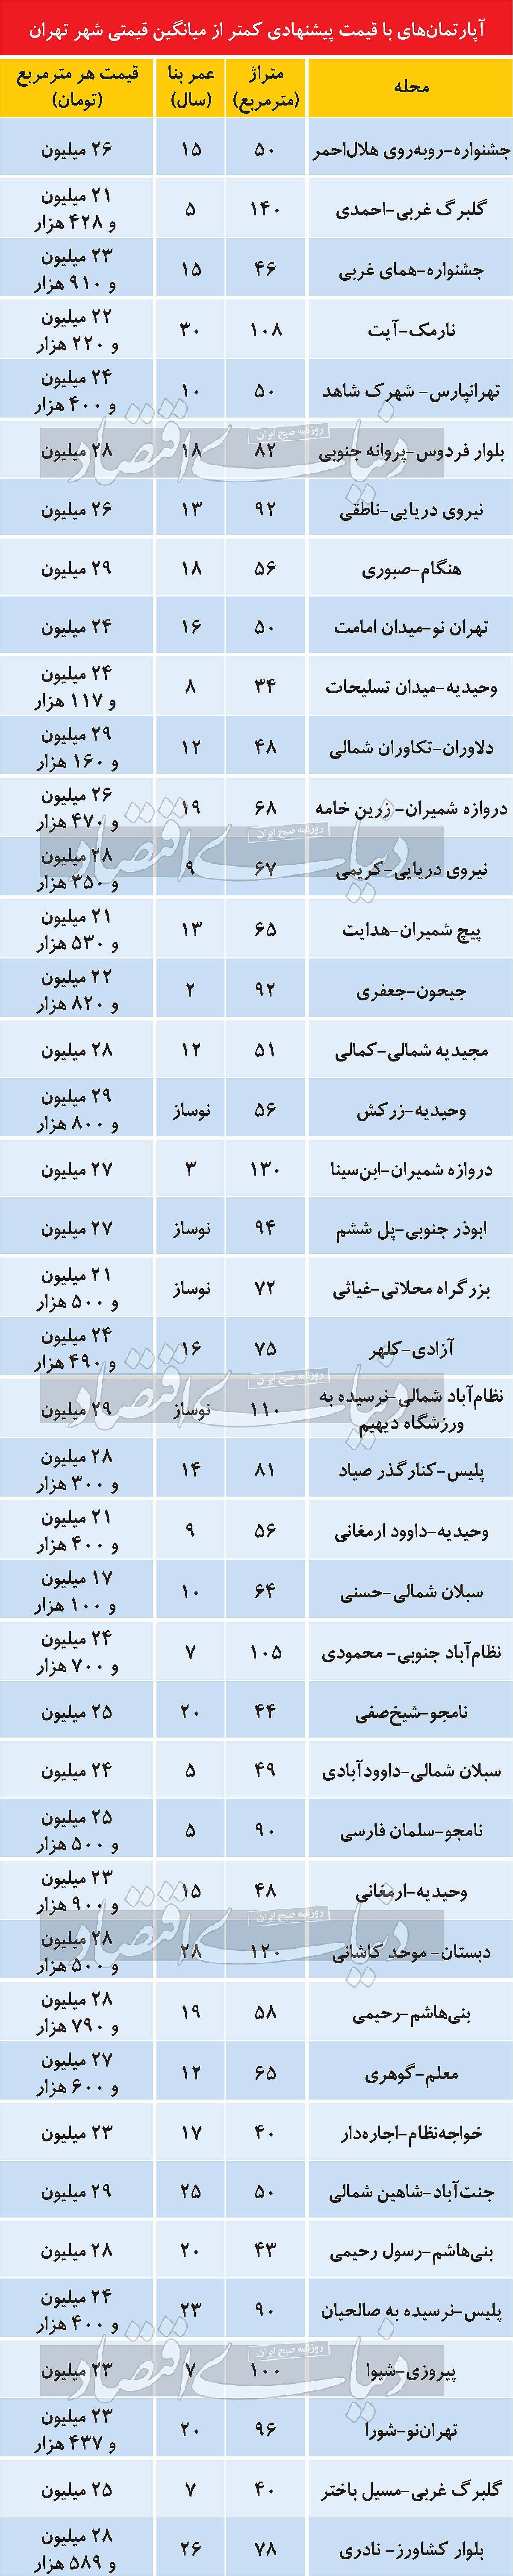 املاک با قیمت پیشنهادی کمتر از متوسط شهر تهران